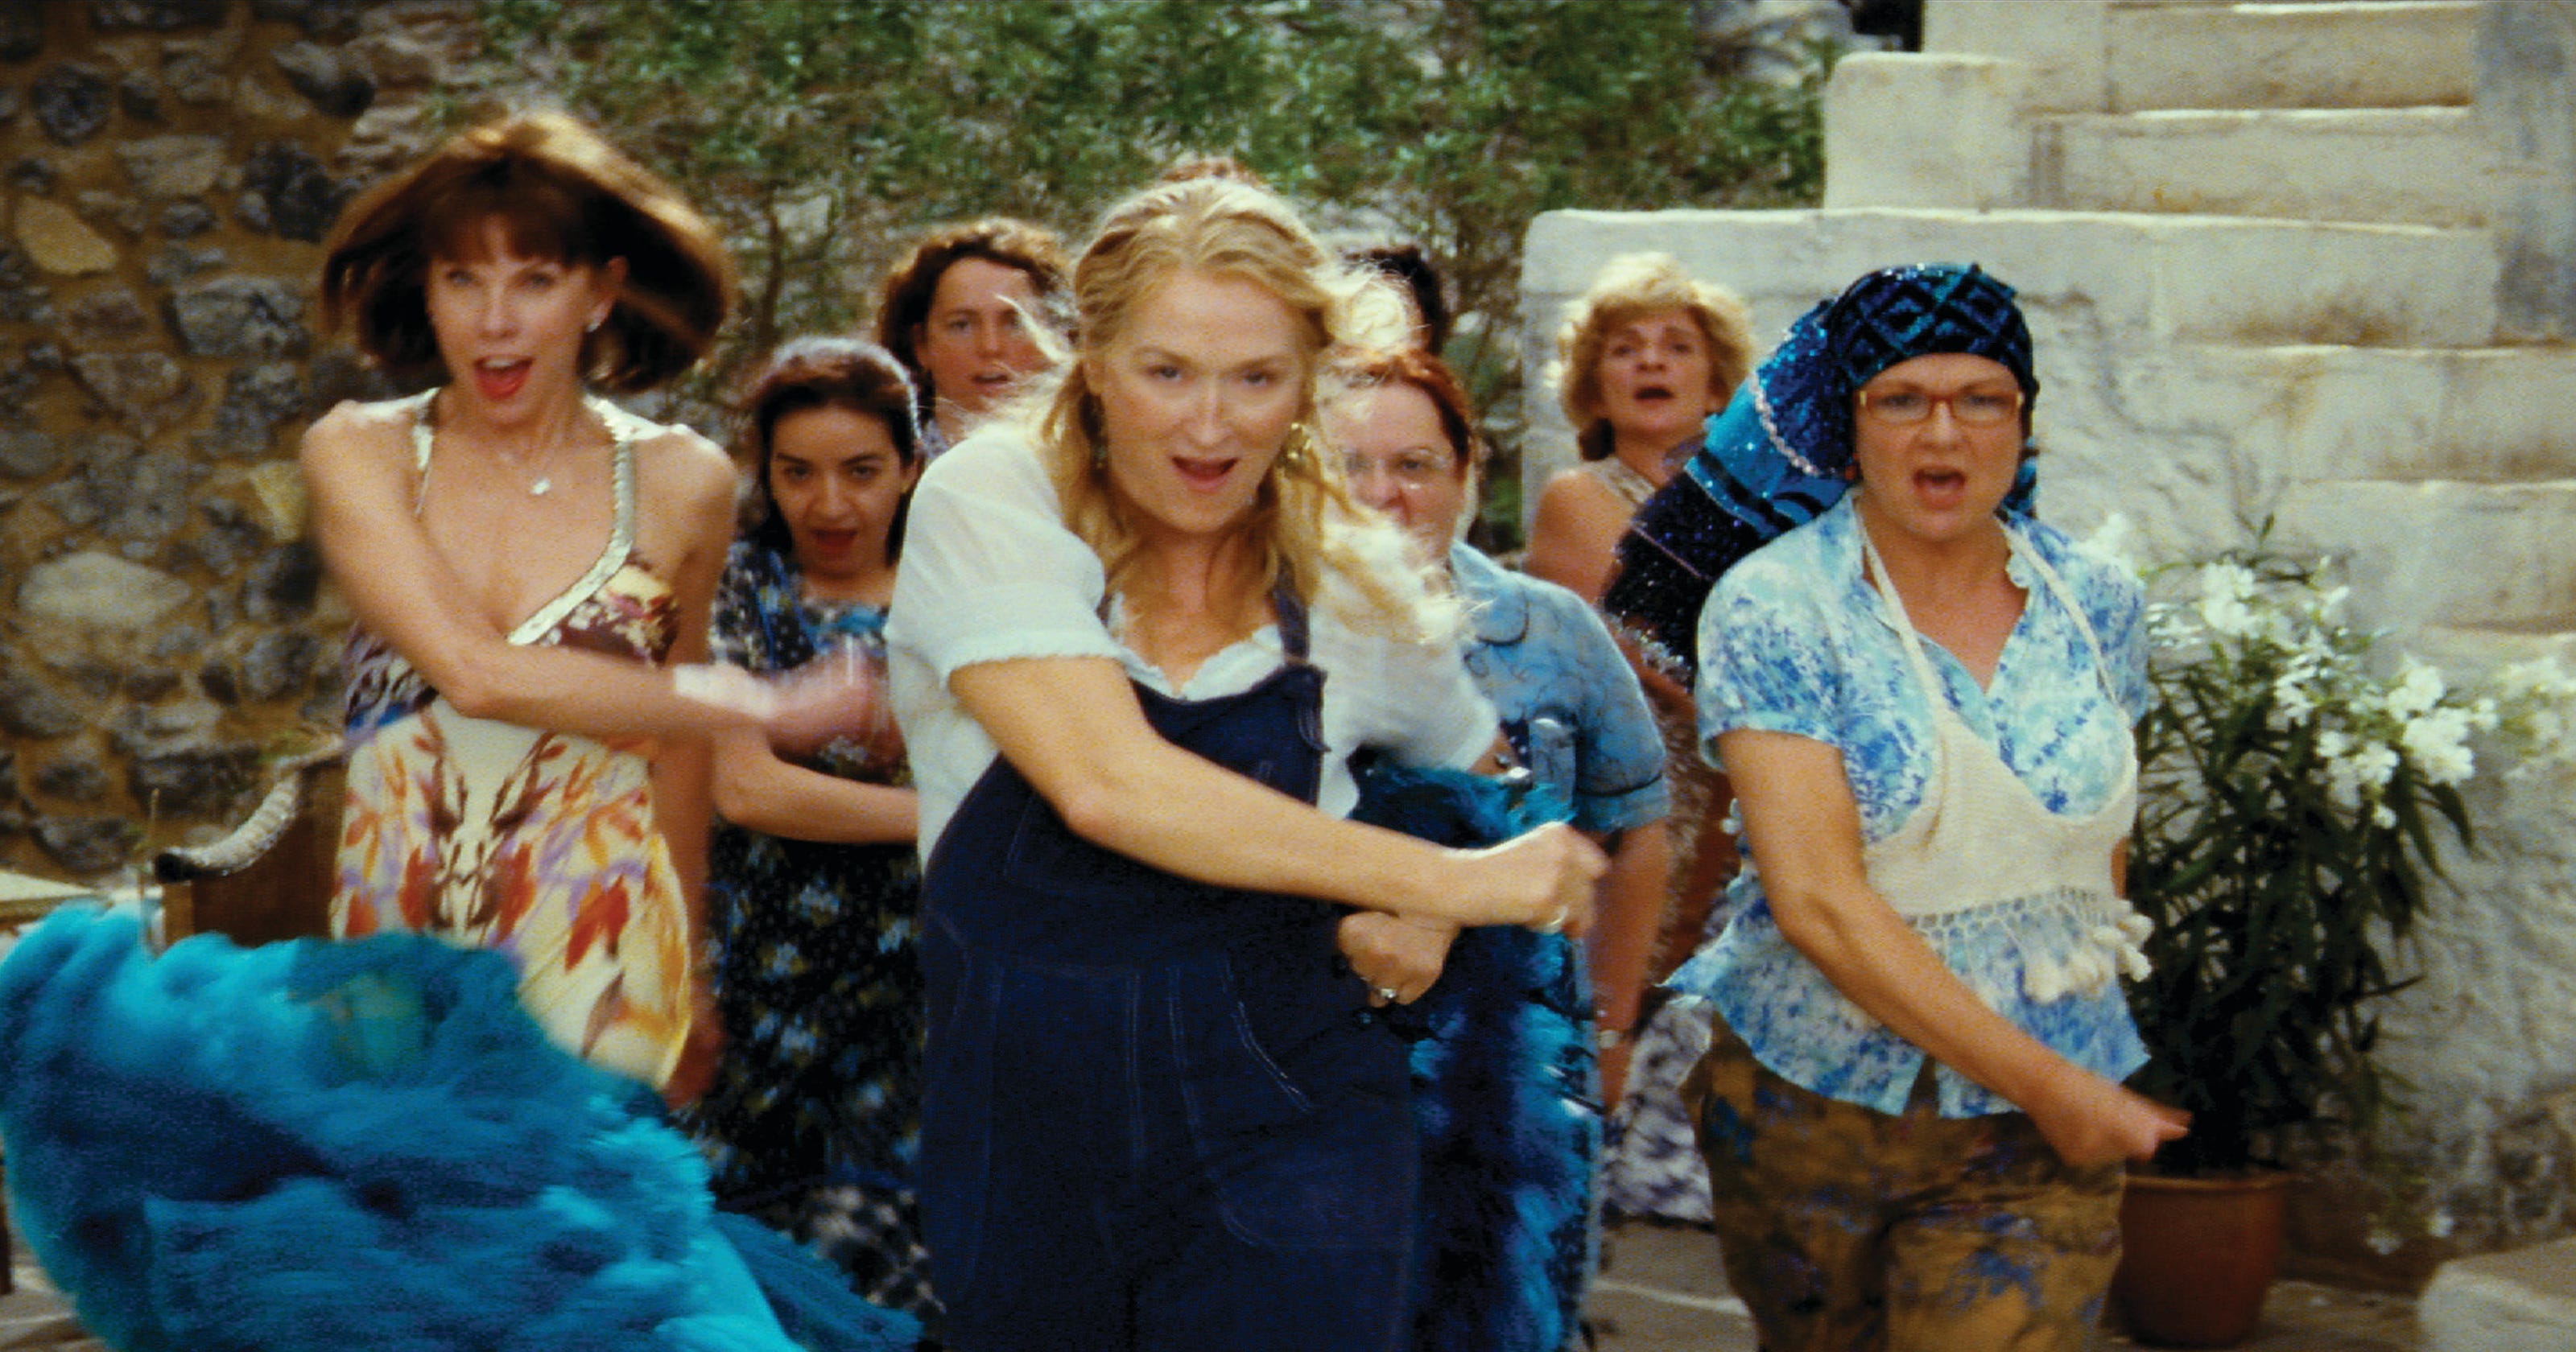 'Mamma Mia 2' The 5 best movie musicals to bingewatch this weekend